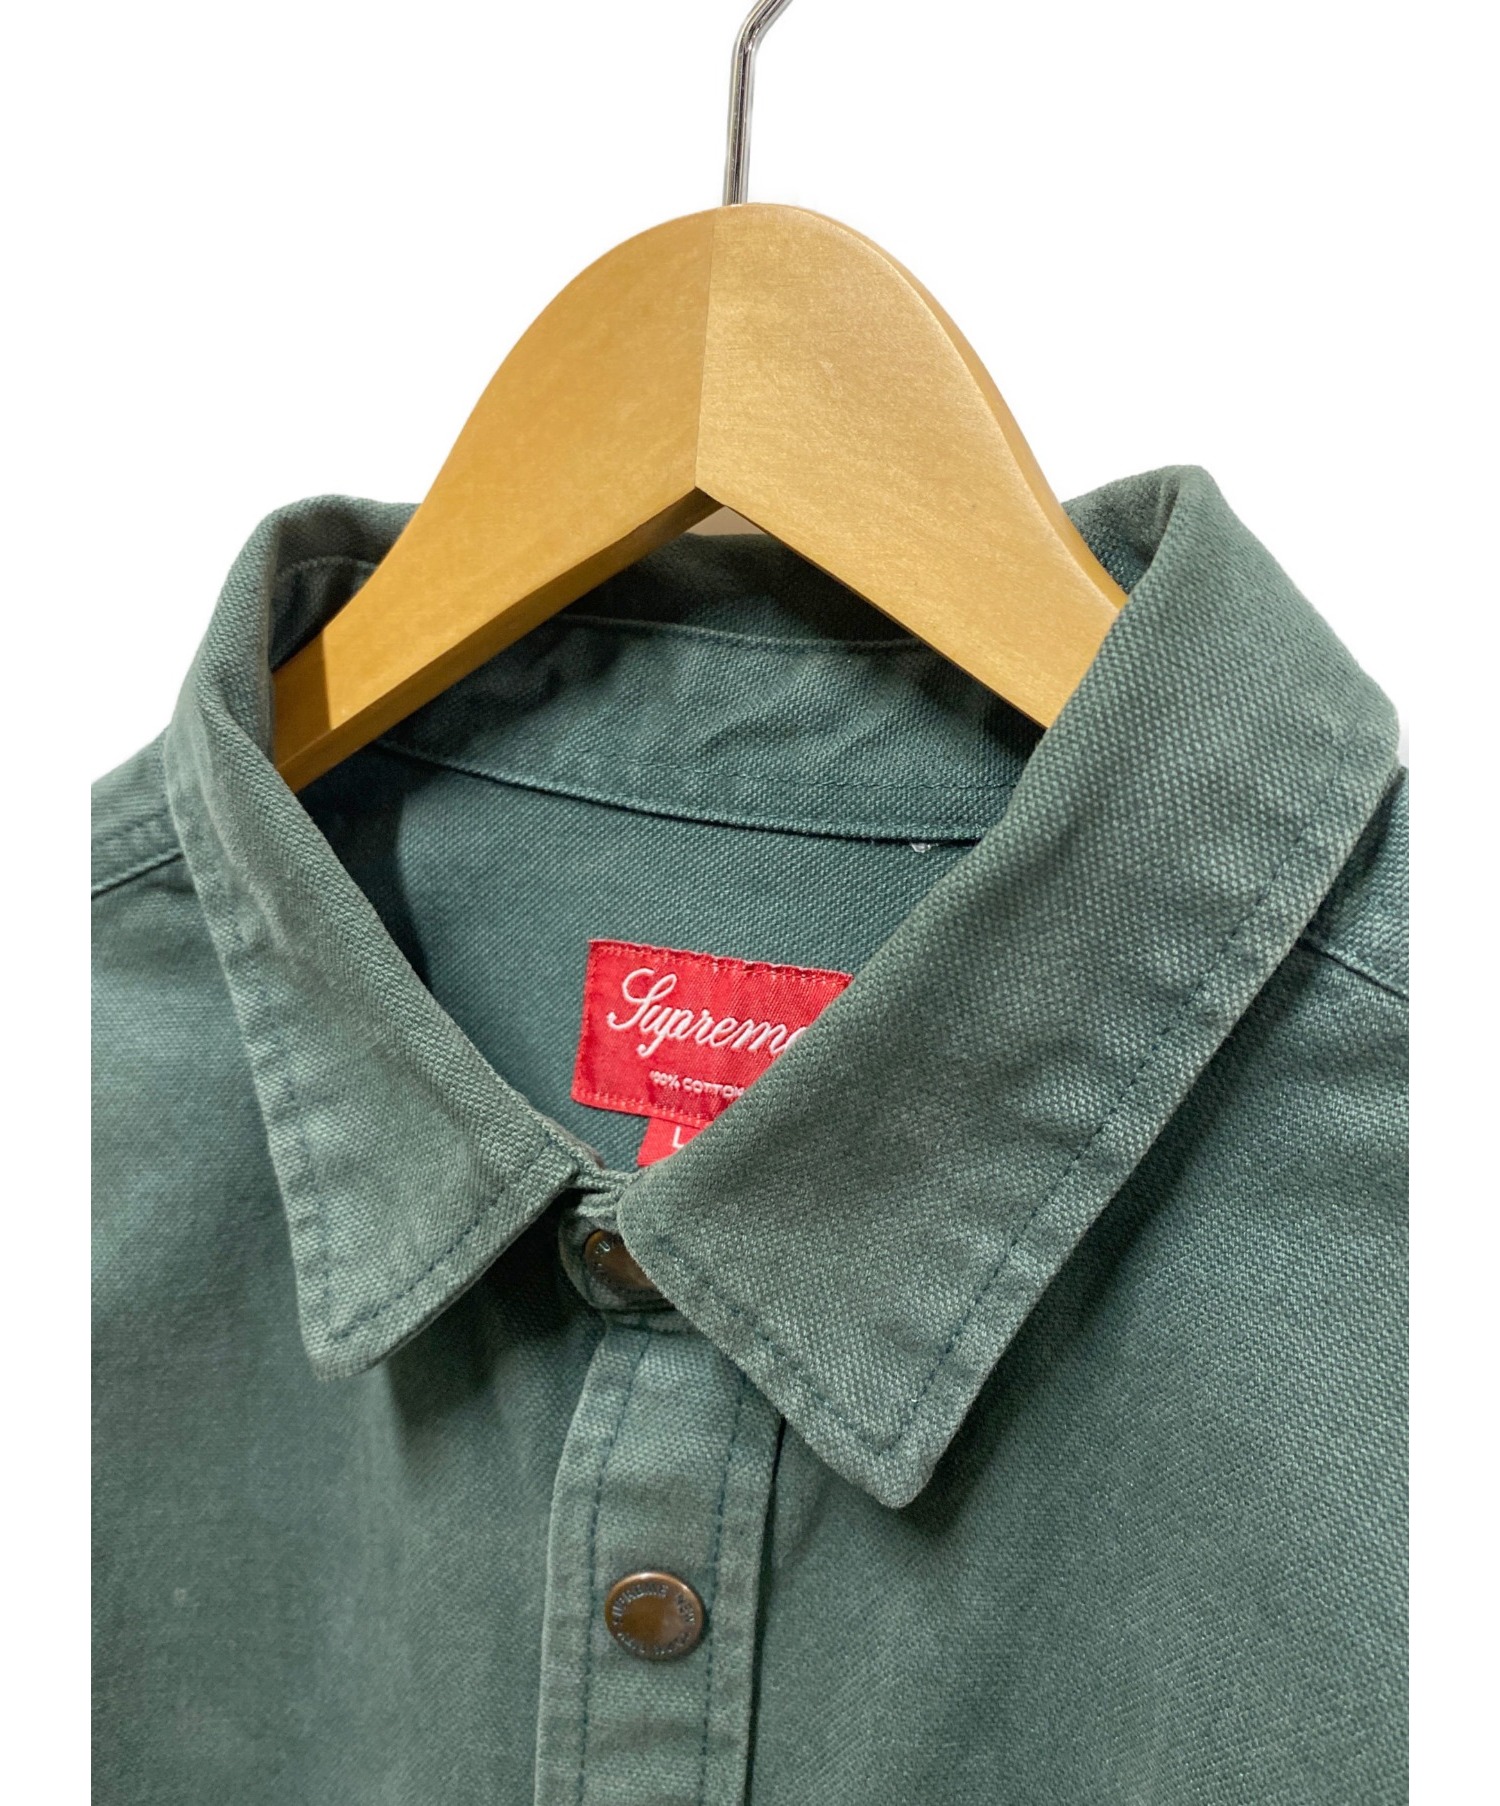 SUPREME (シュプリーム) ラインロゴヘビーコットンシャツジャケット グリーン サイズ:L